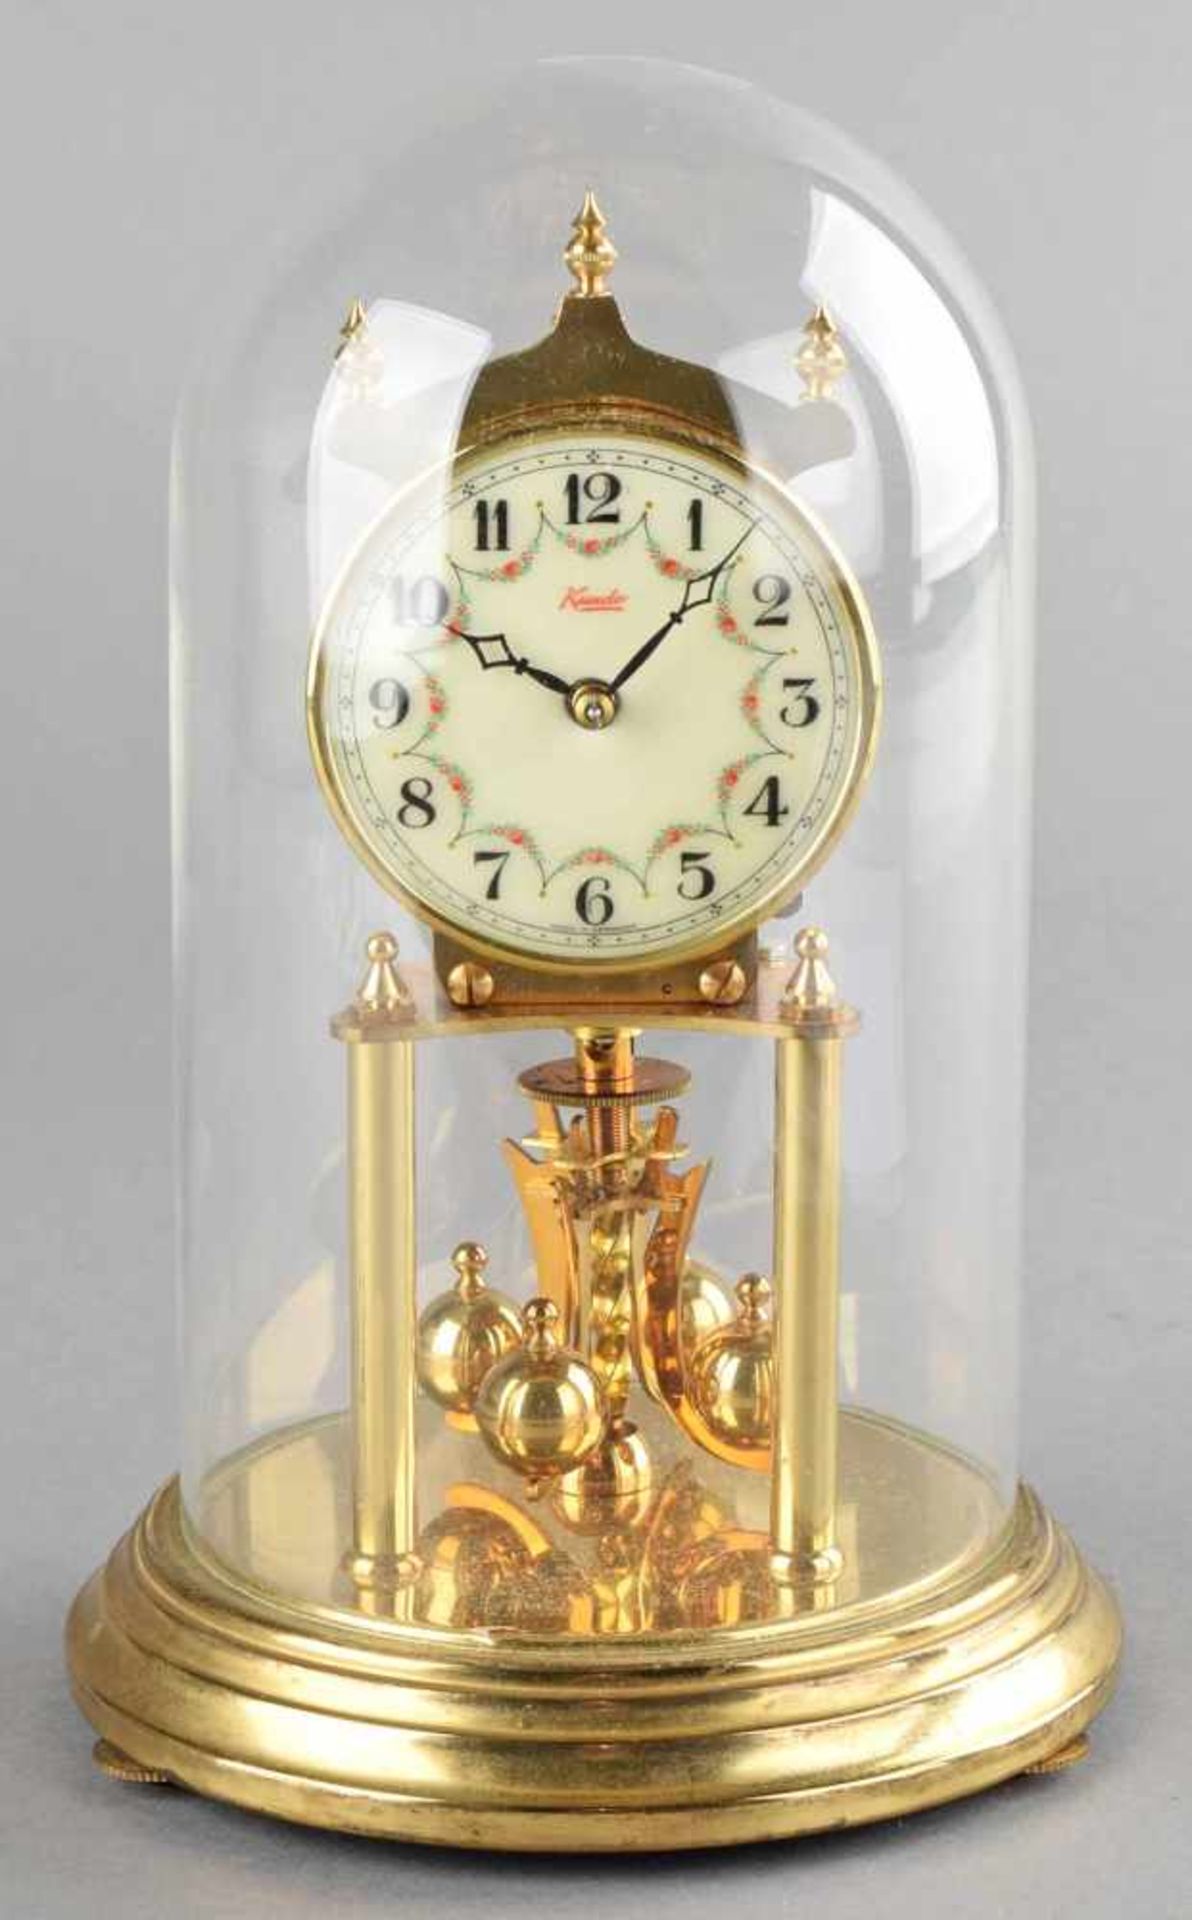 Jahresuhr getreppter runder Messingsockel, Uhrwerk getragen von 2 Säulen, Zifferblatt verziert mit - Bild 2 aus 3